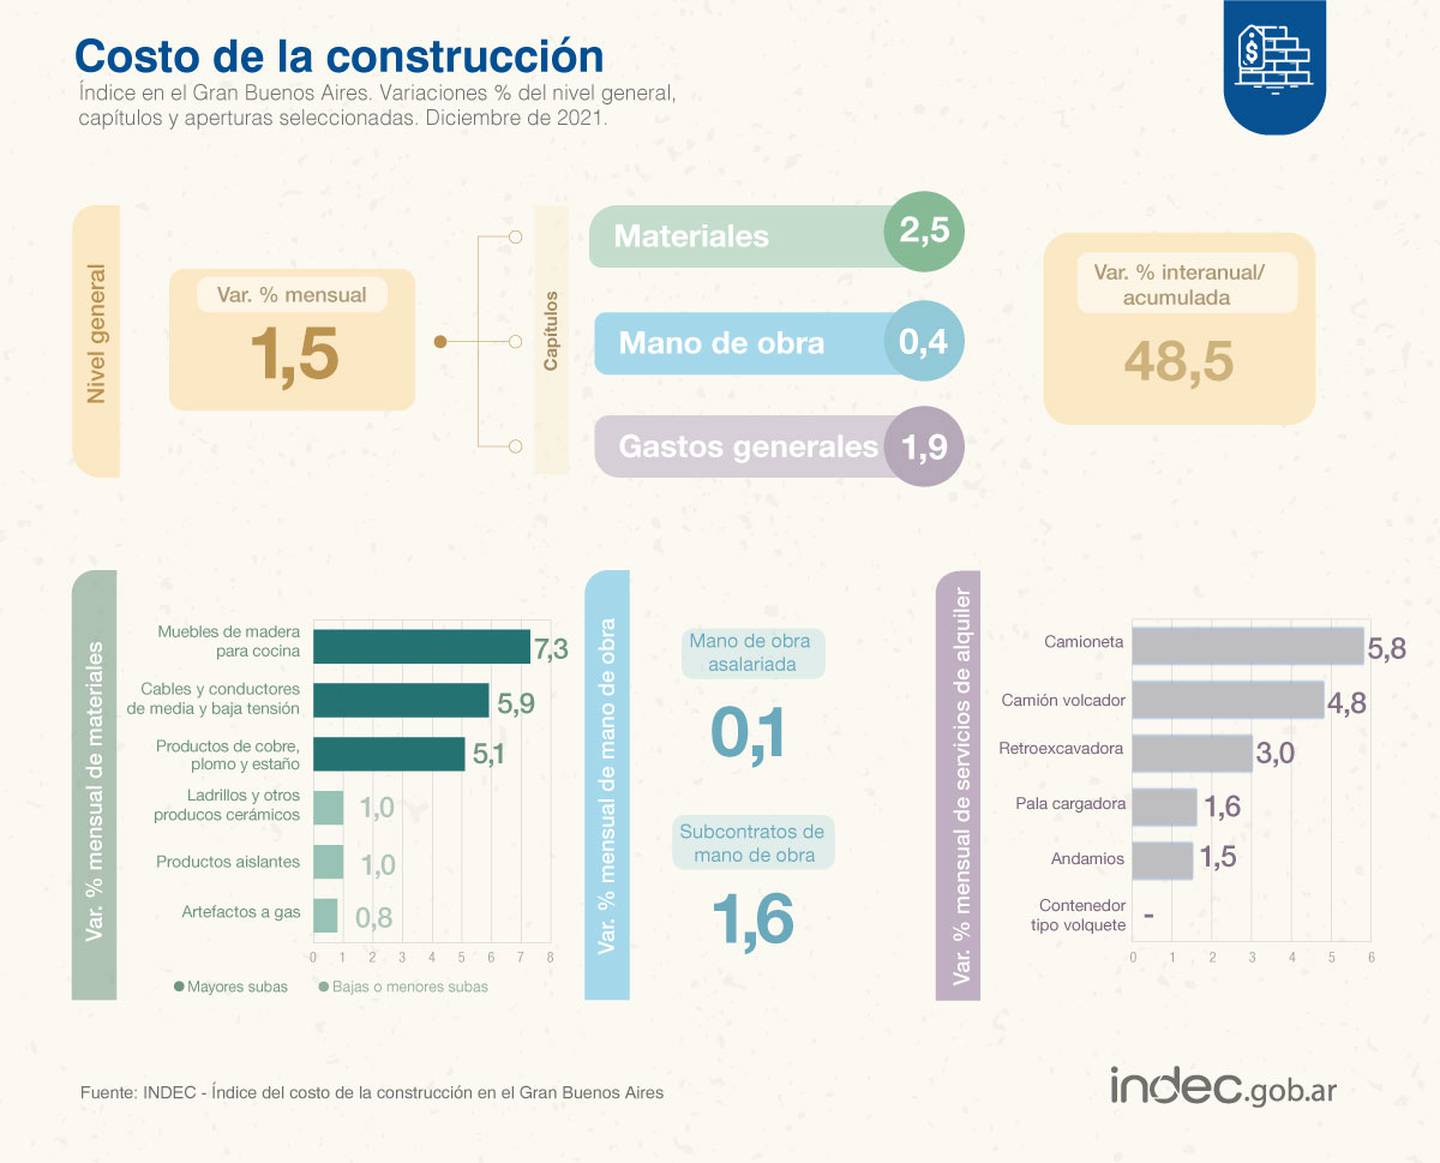 Costo de la Construcción en Argentina. Fuente: Indecdfd